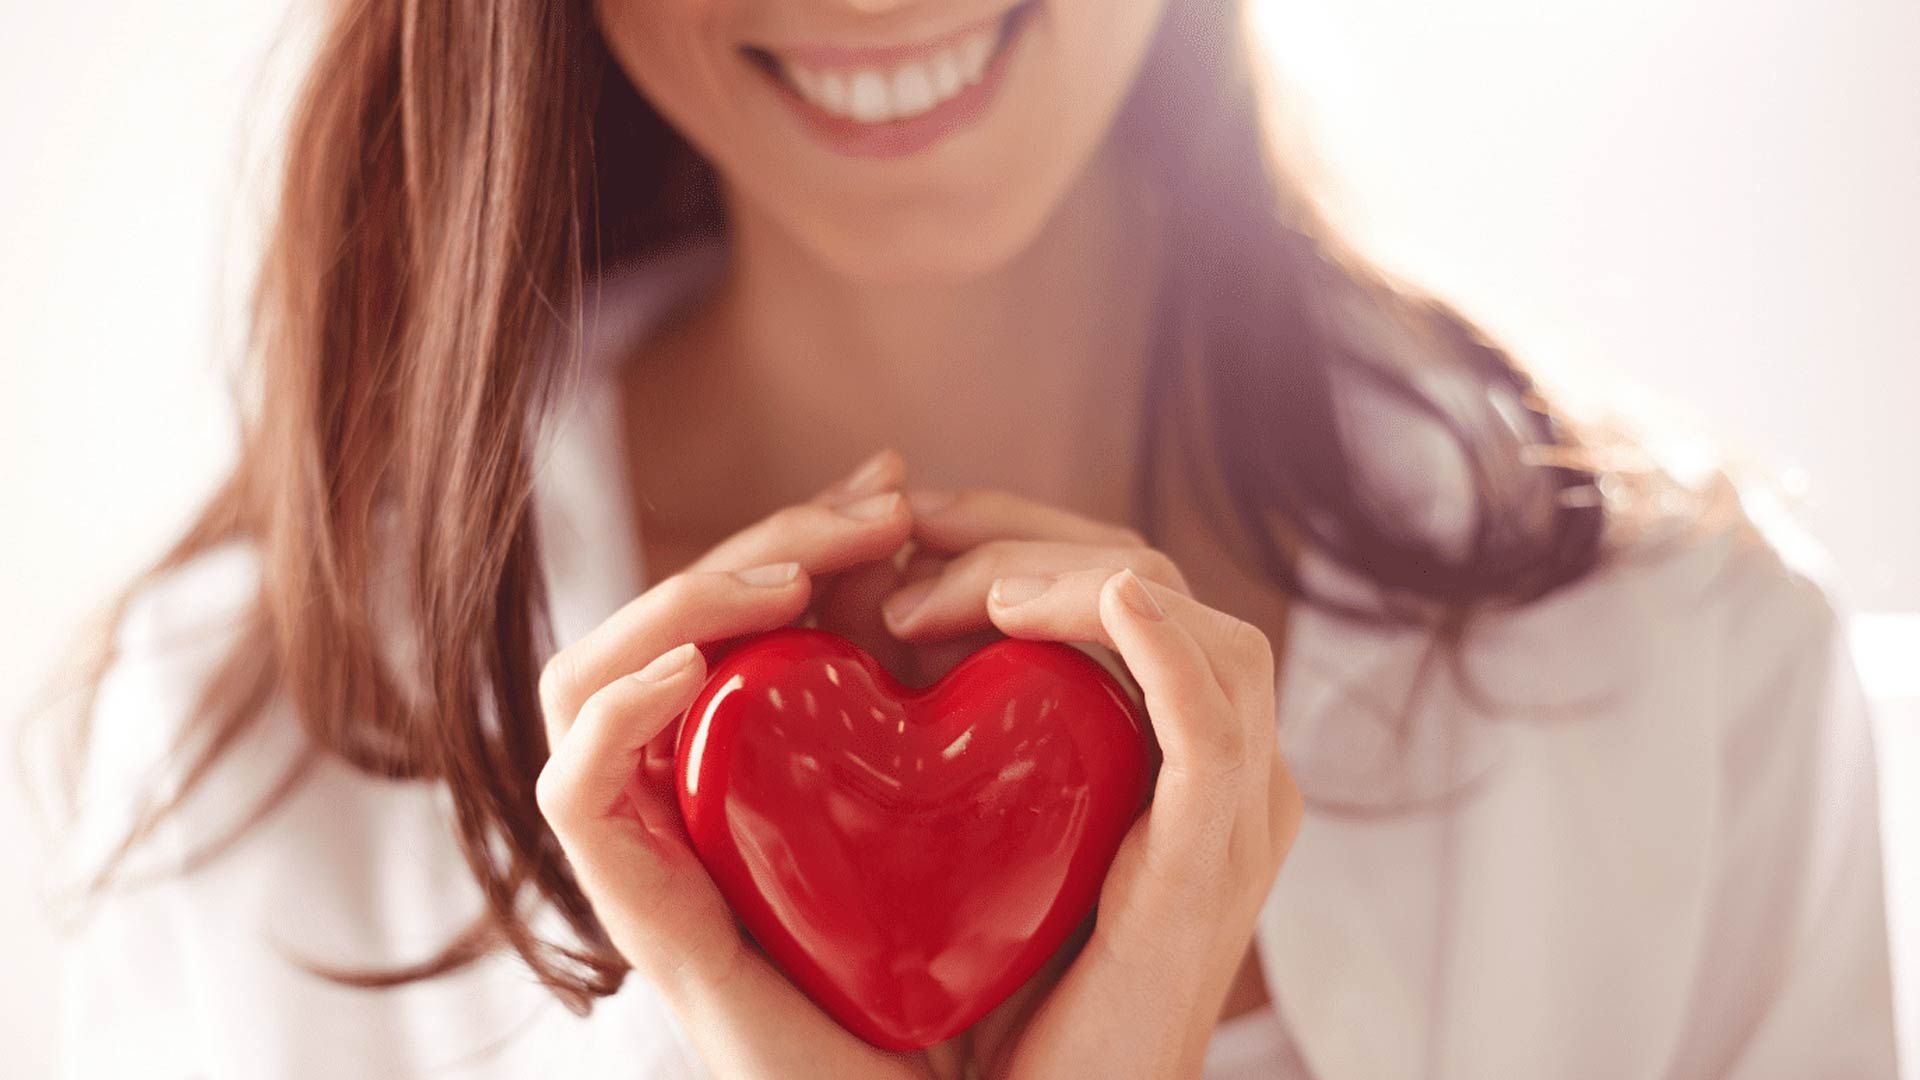 Gesundes Herz, gesunder Verstand: Den Zusammenhang zwischen psychischer Gesundheit und Ihrem Körper verstehen